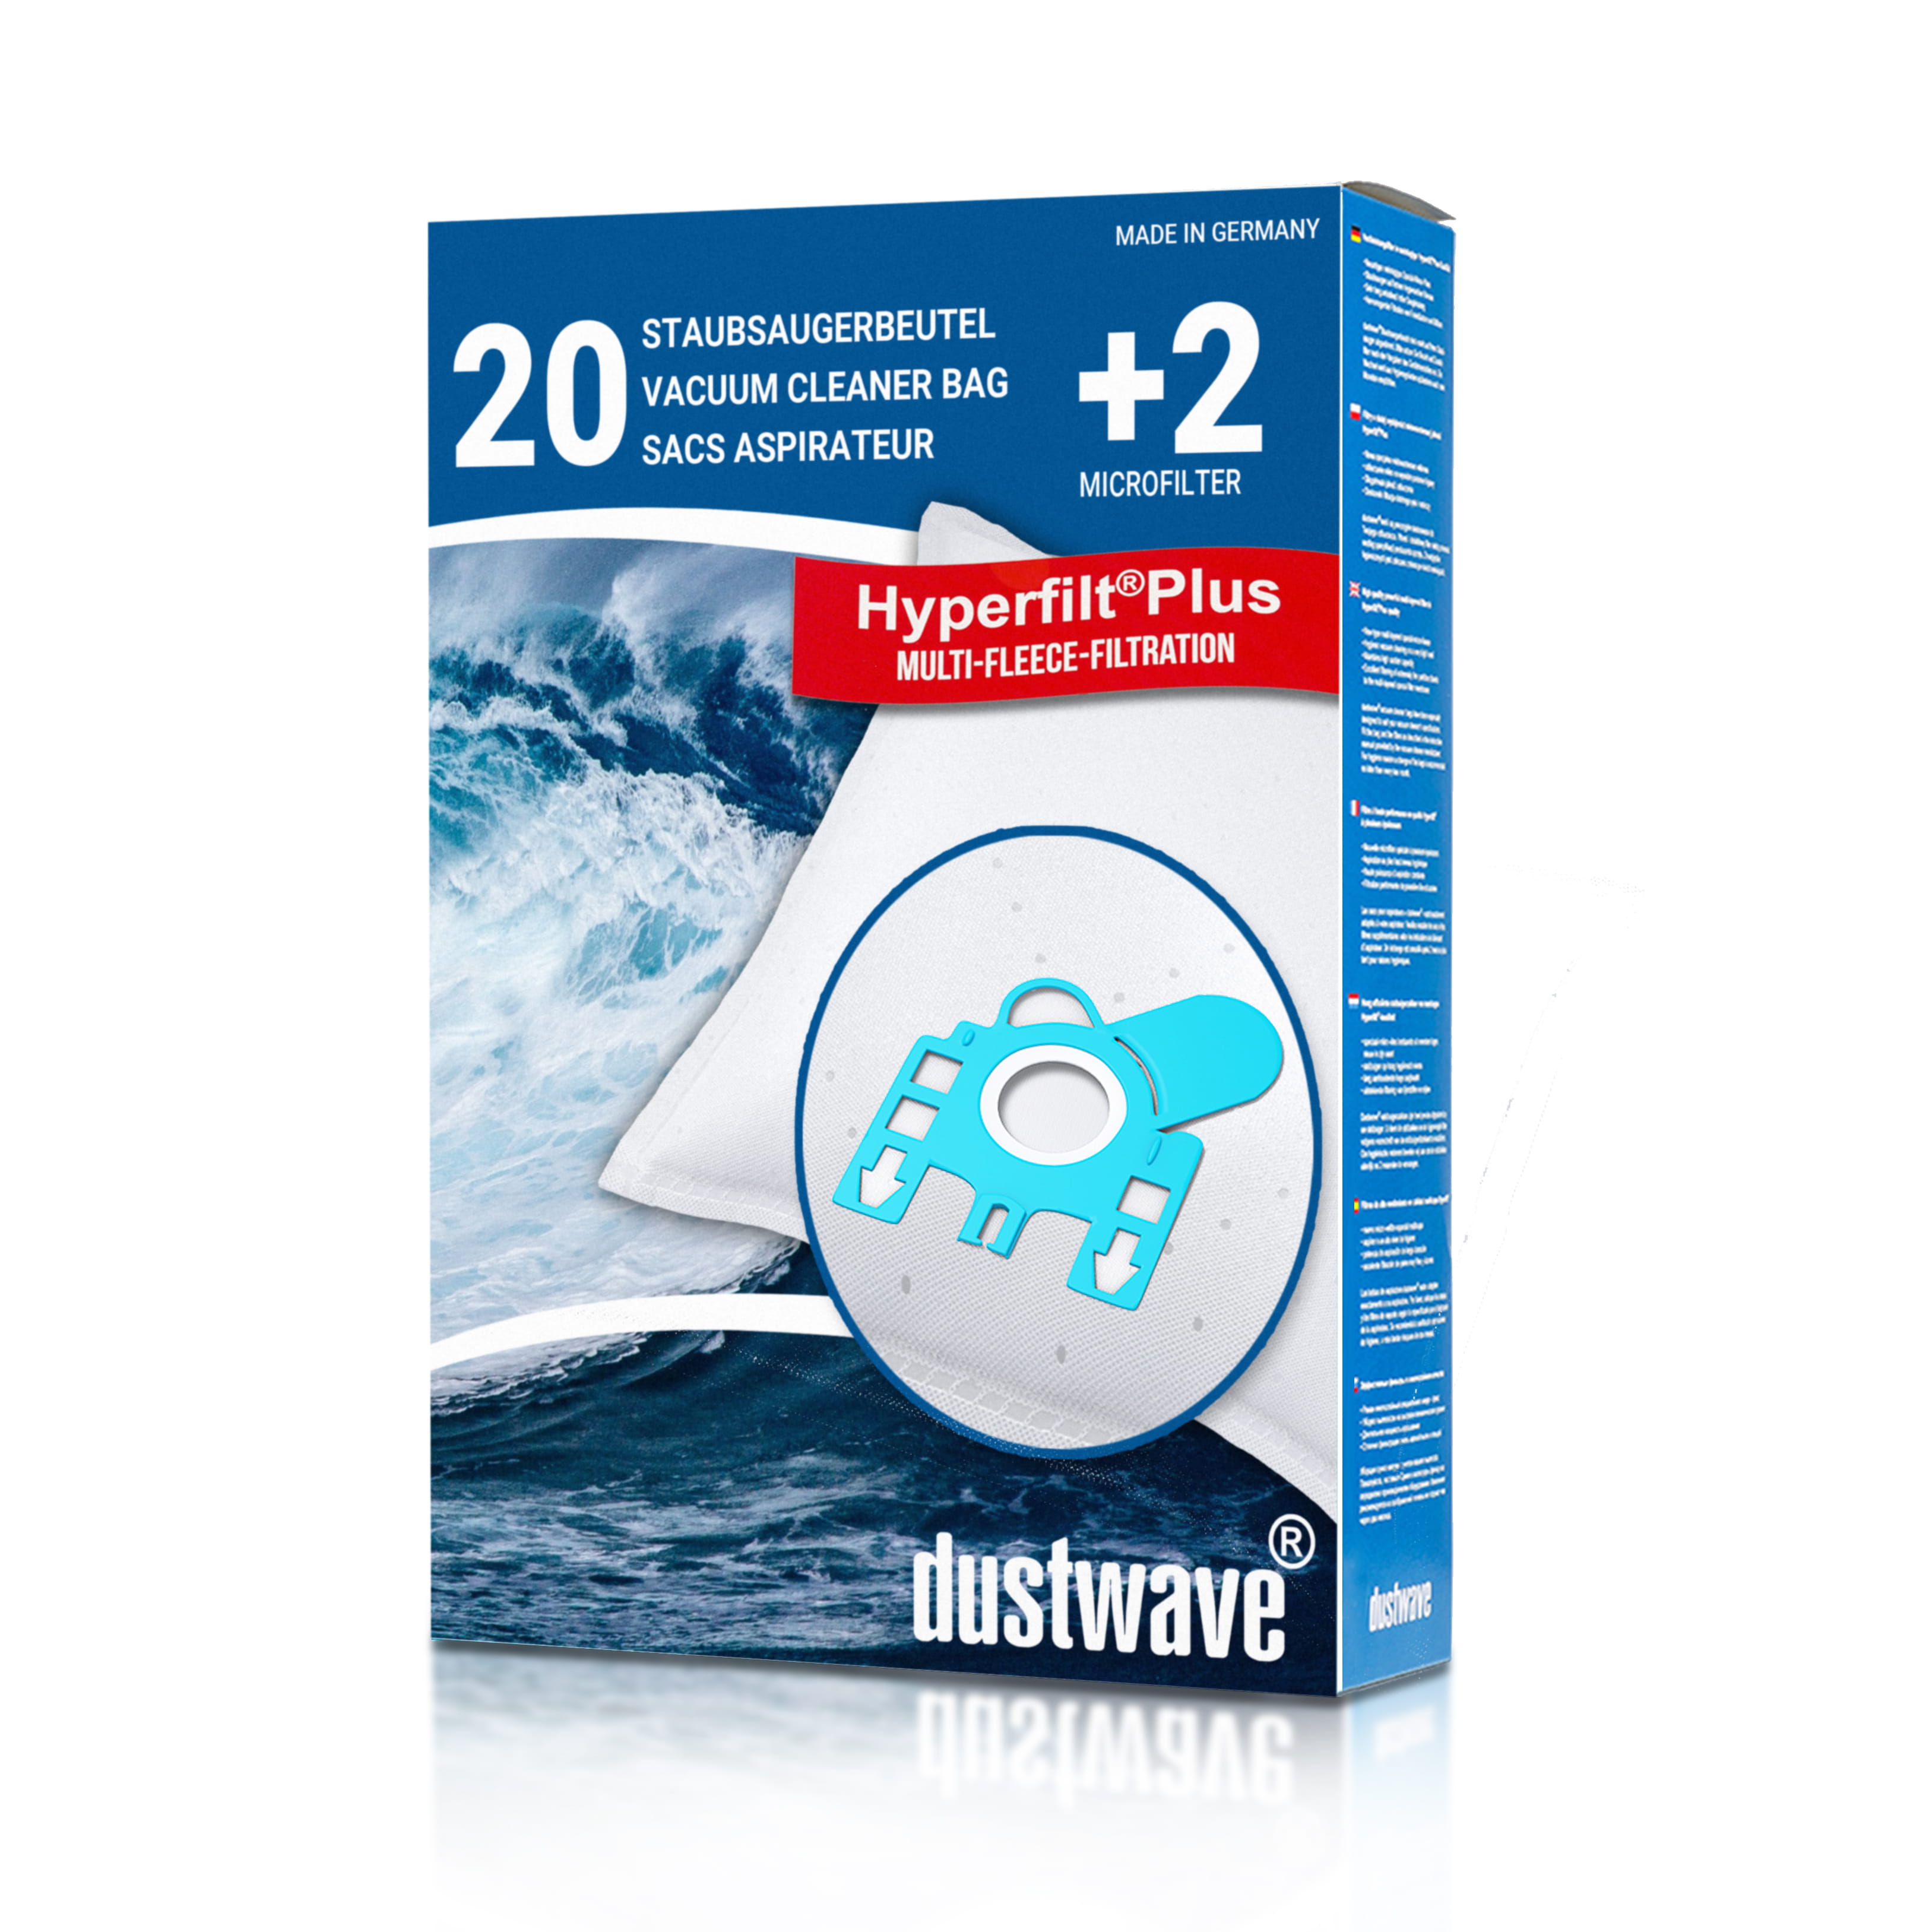 Dustwave® 20 Staubsaugerbeutel für Hoover TP6206 / TRTP6206 - hocheffizient, mehrlagiges Mikrovlies mit Hygieneverschluss - Made in Germany